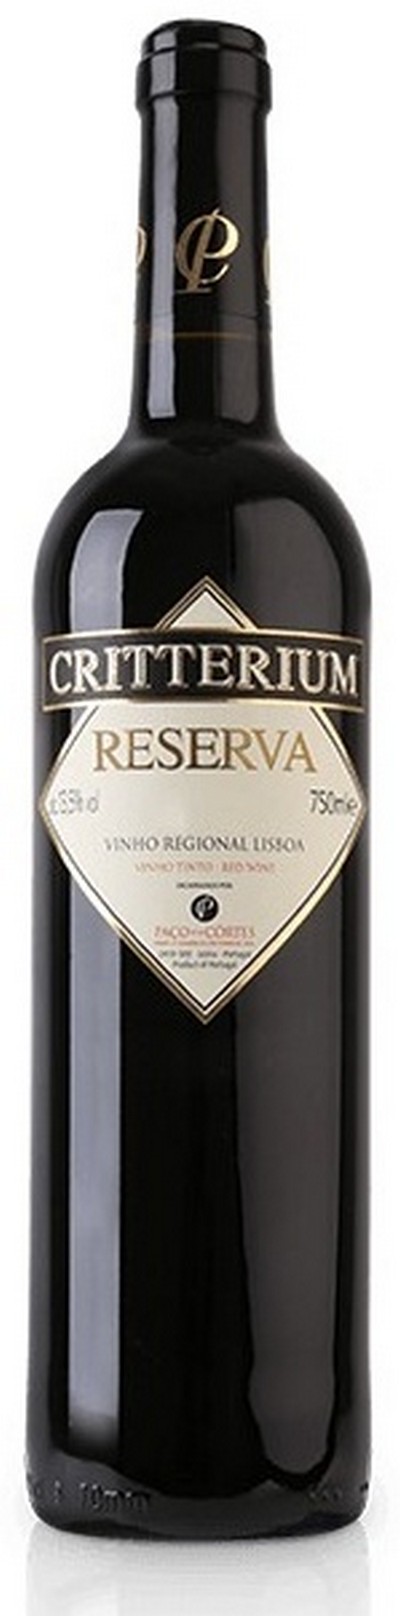 critterium-reserva-2020